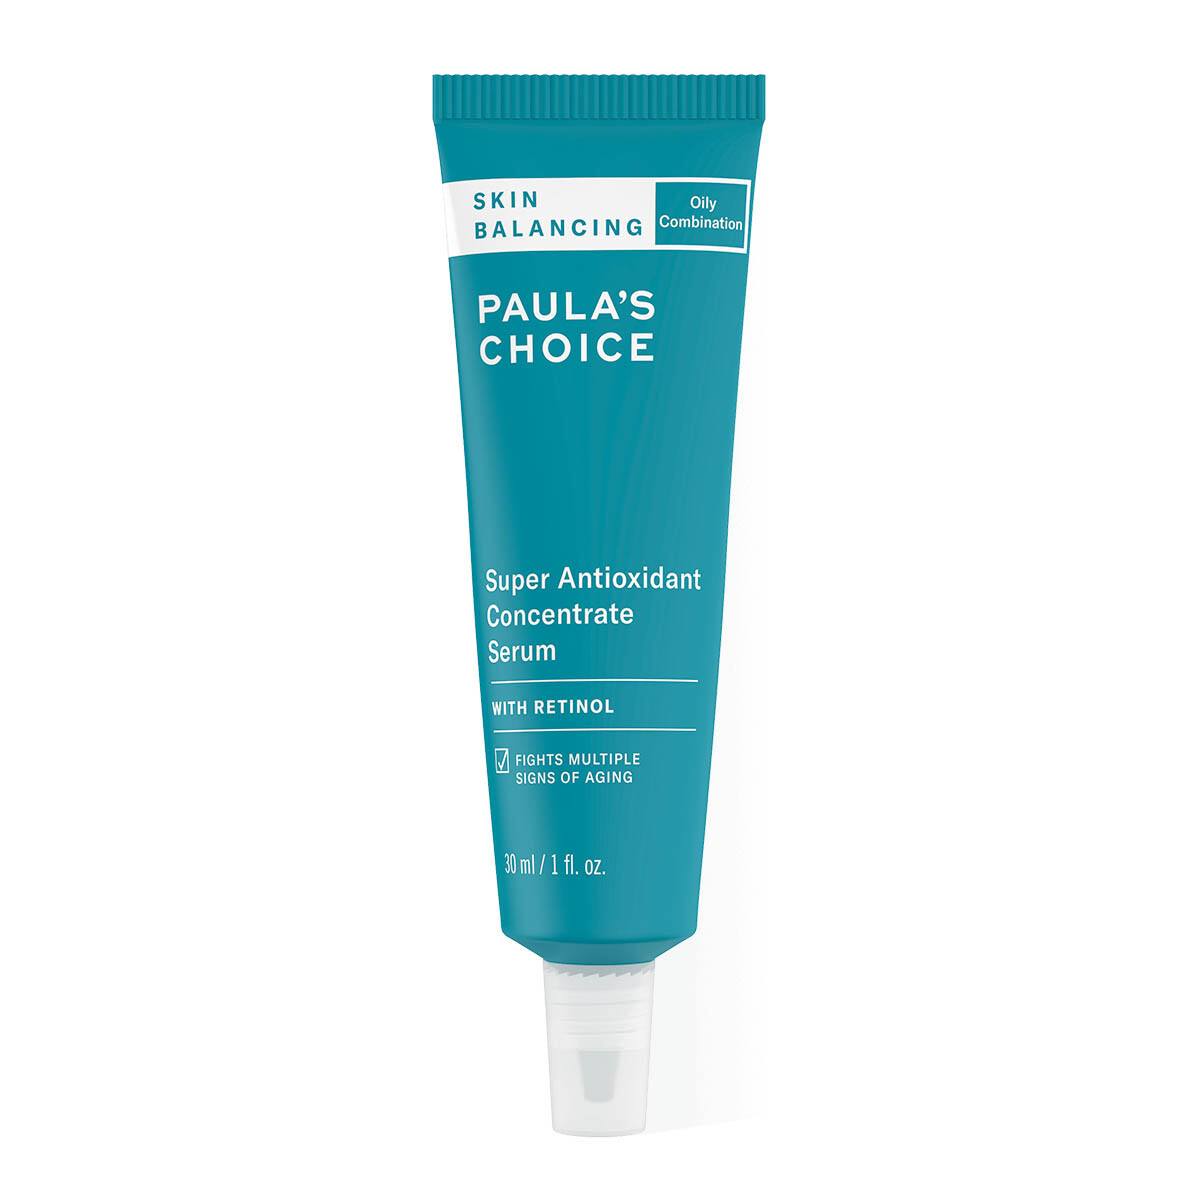 PAULAS CHOICE Skin Balancing Super Antioxidant Concentrate Serum kaufen bestellen Rabattcode billiger Preisvergleich Erfahrungen Review Test